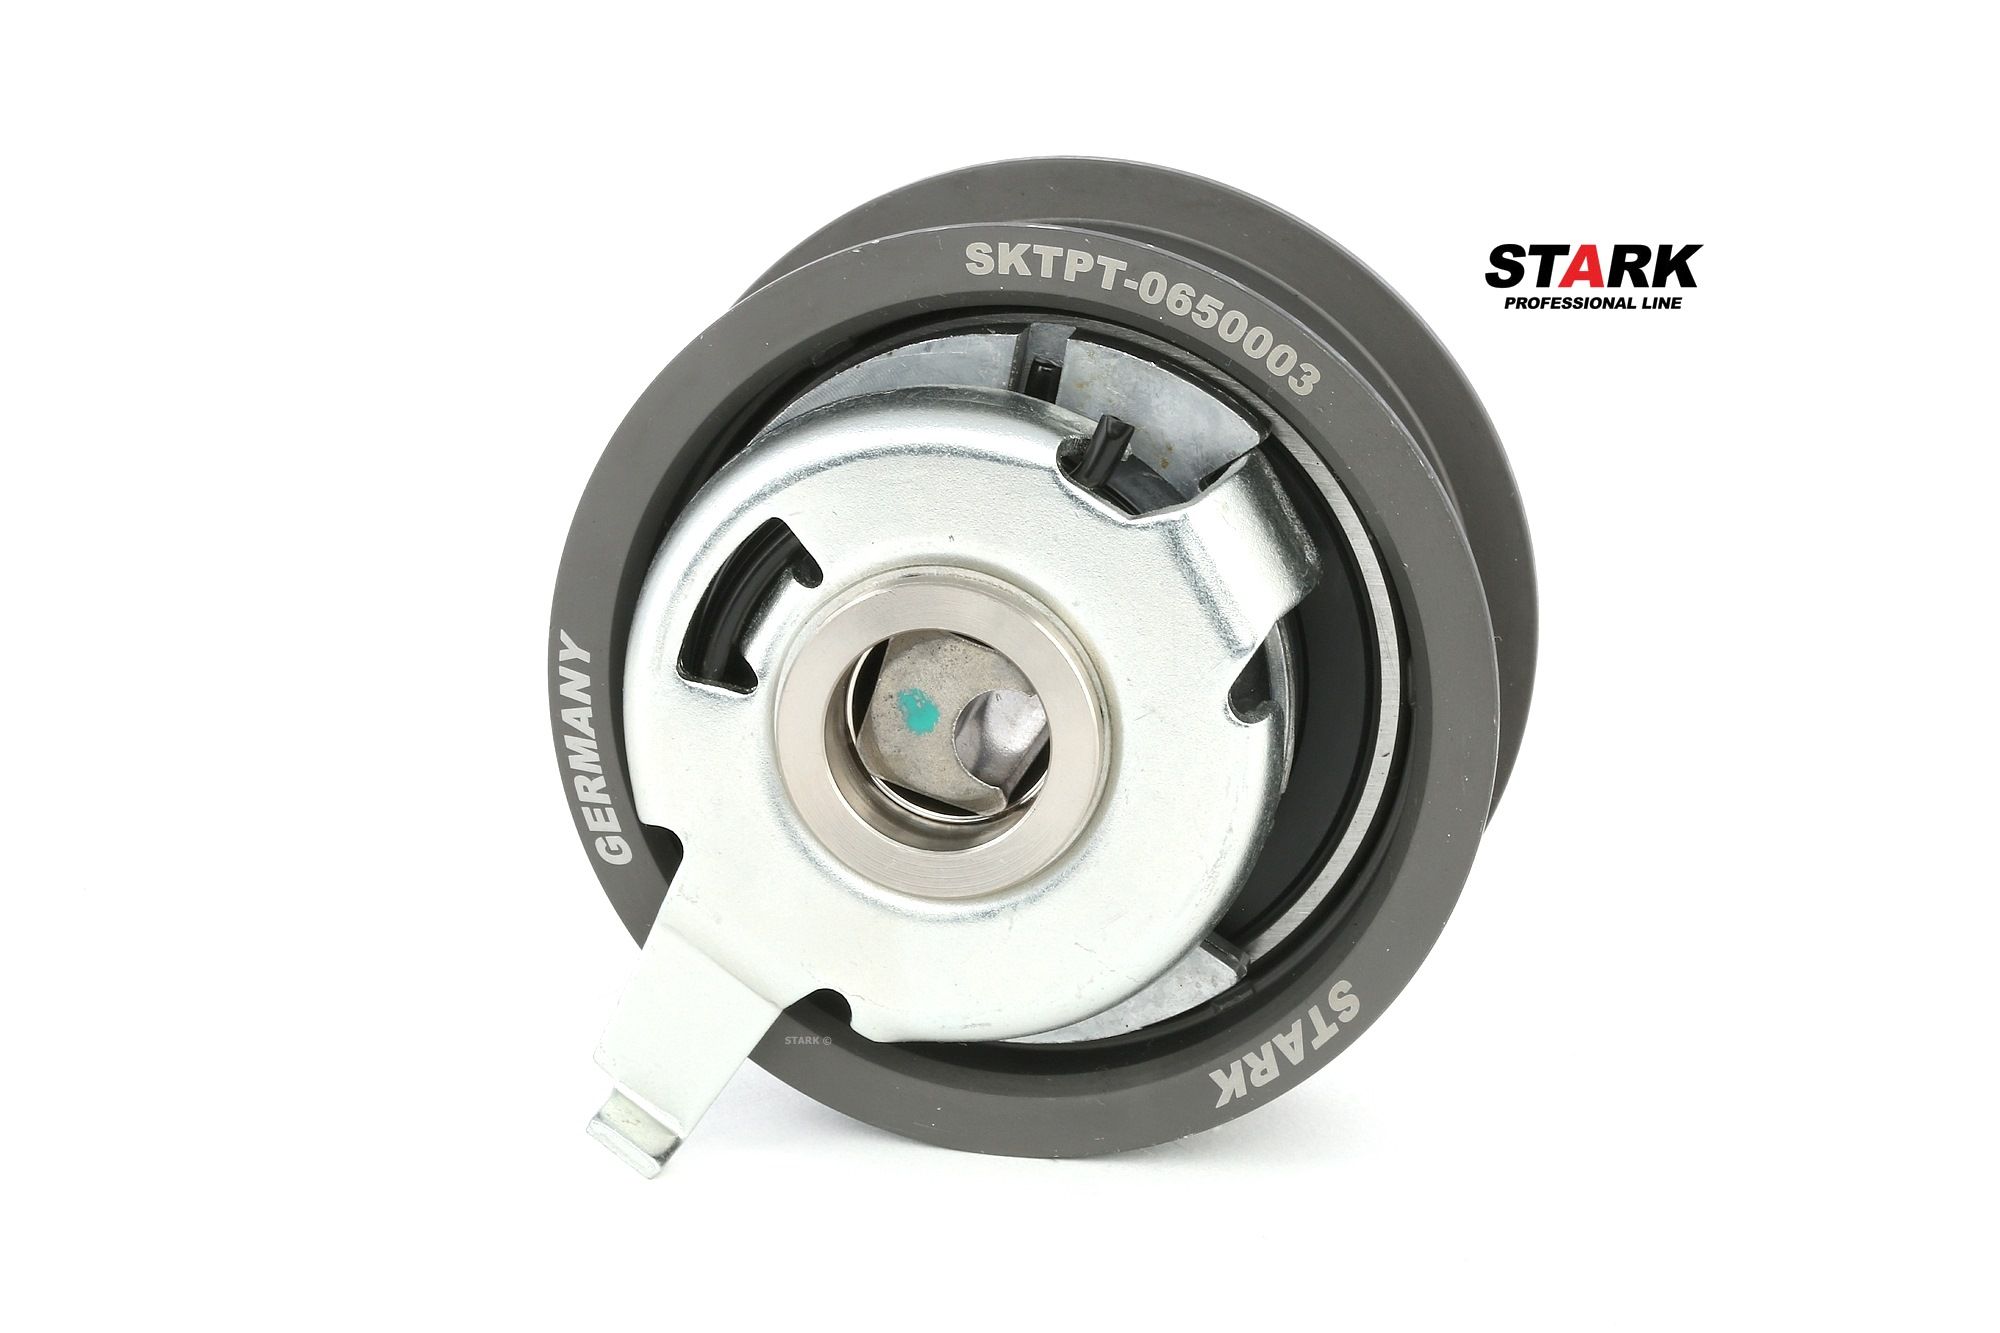 Original STARK Timing belt idler pulley SKTPT-0650003 for BMW 5 Series